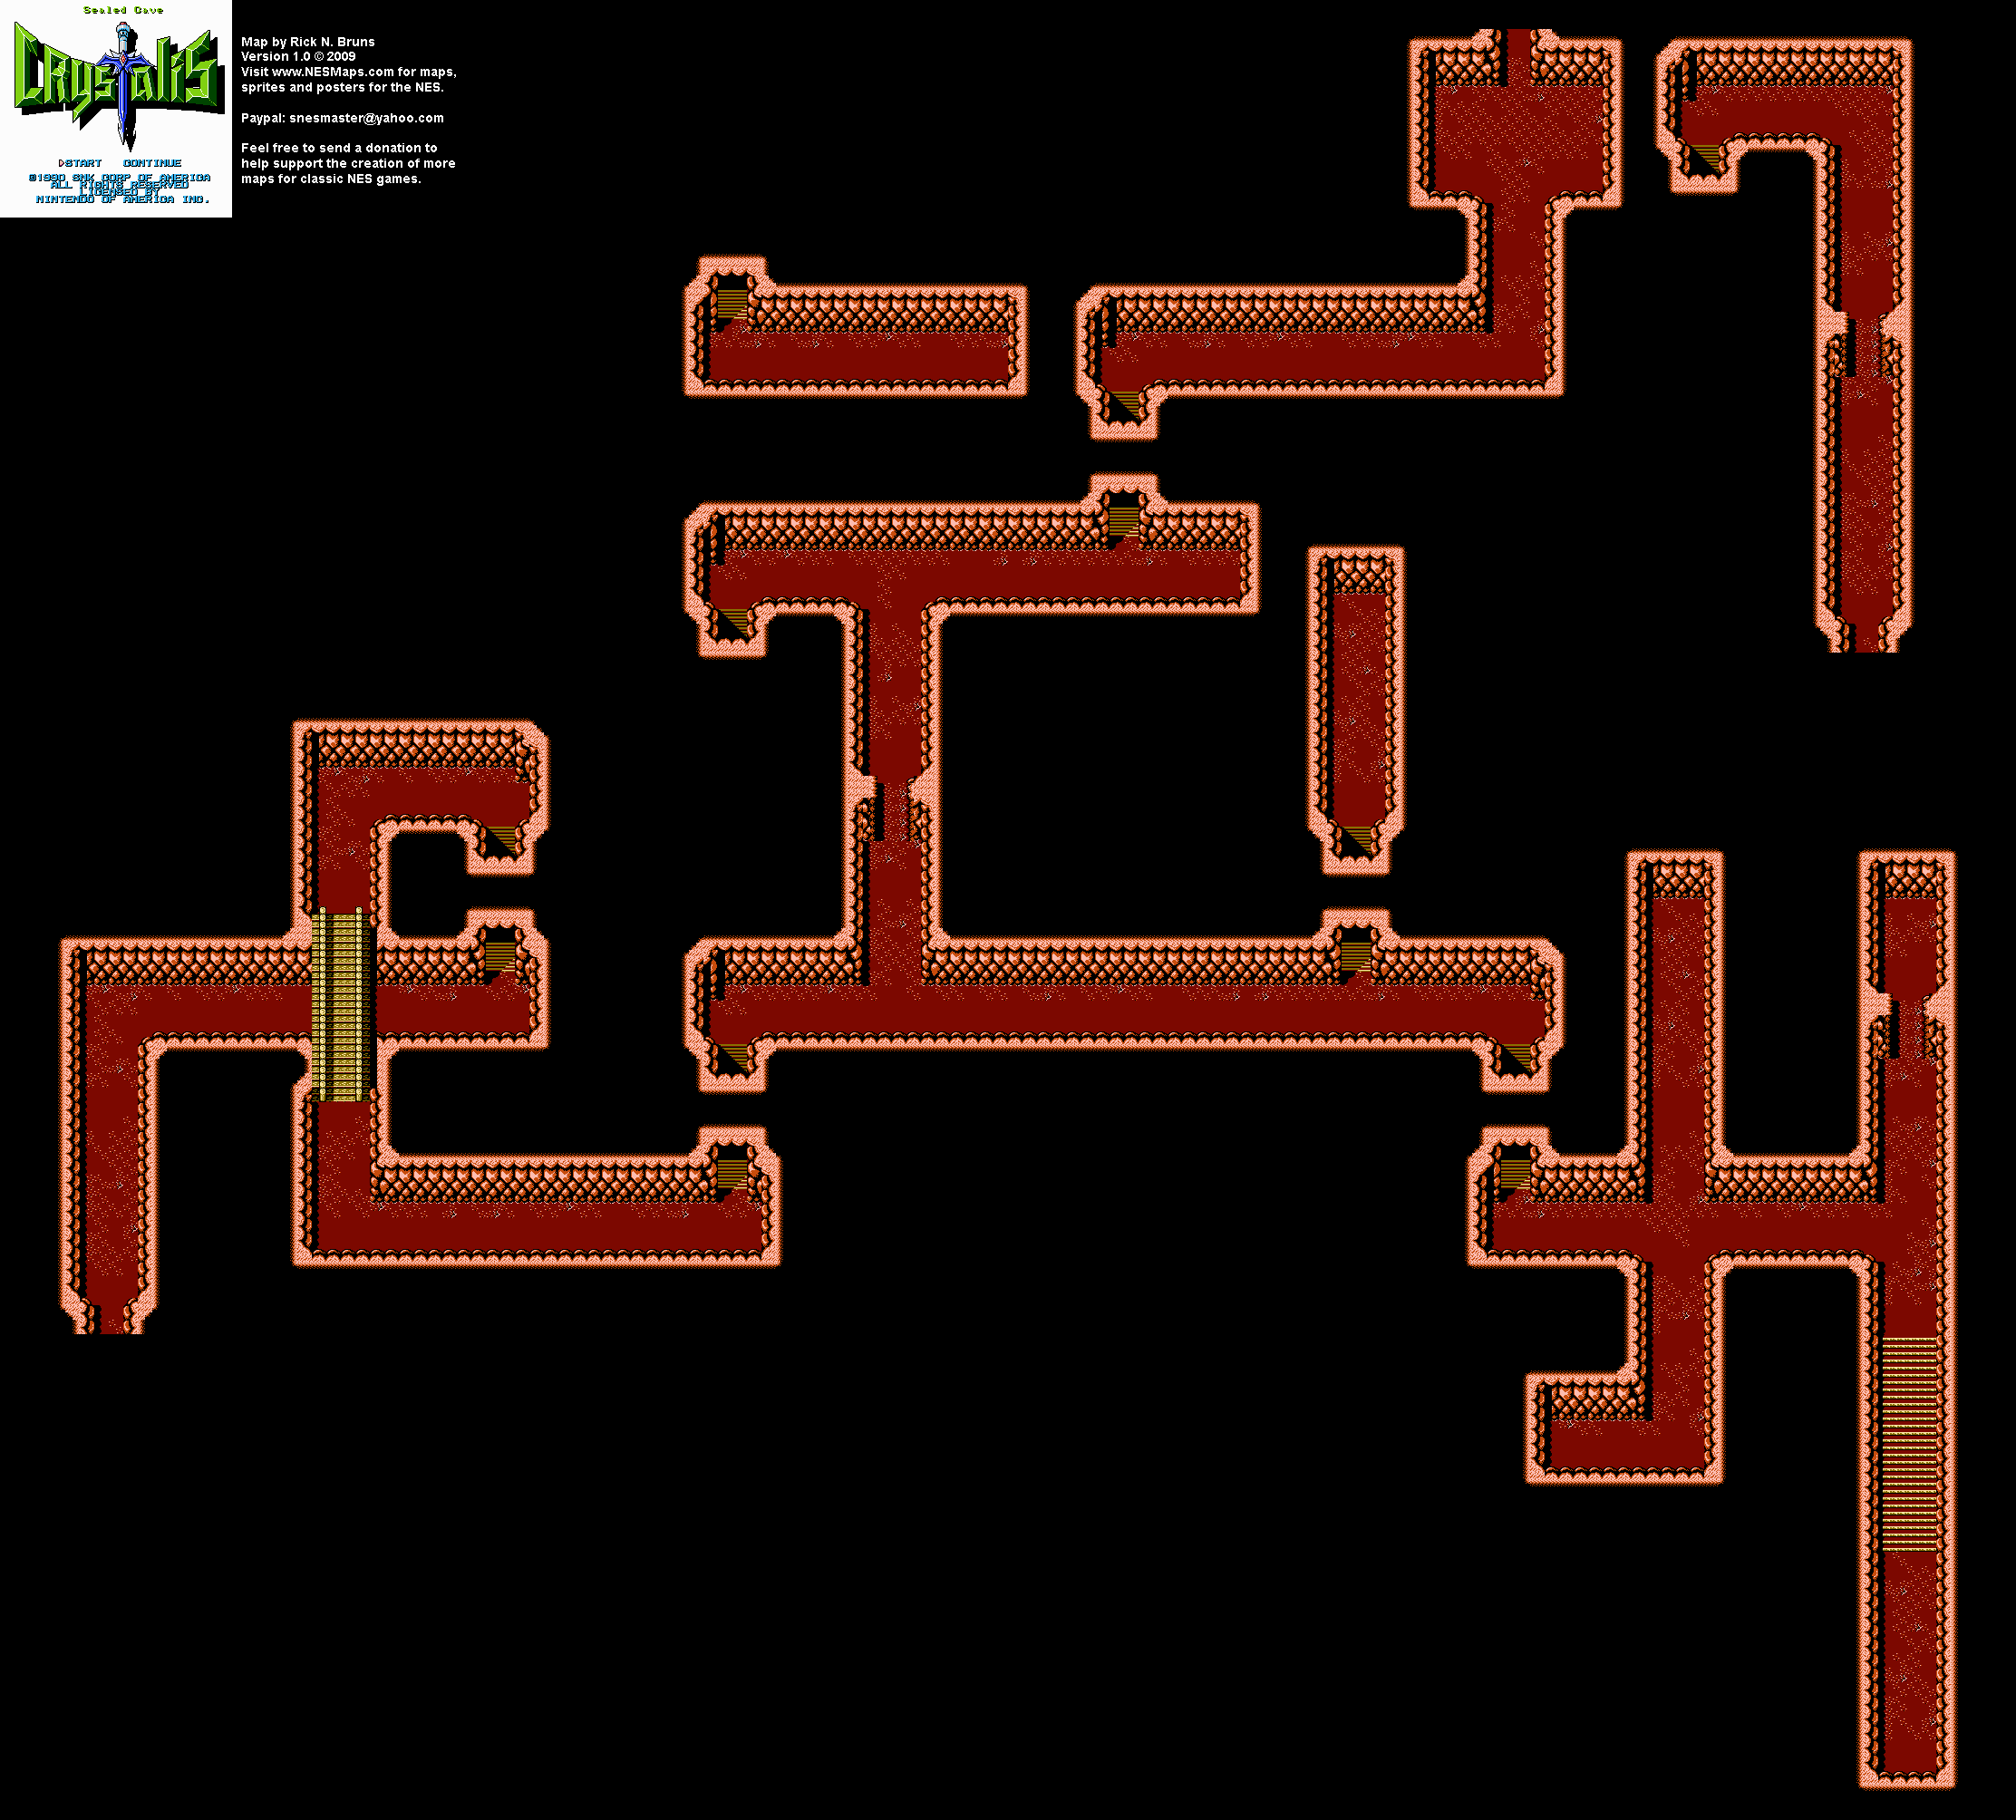 Crystalis - Sealed Cave Nintendo NES Map BG